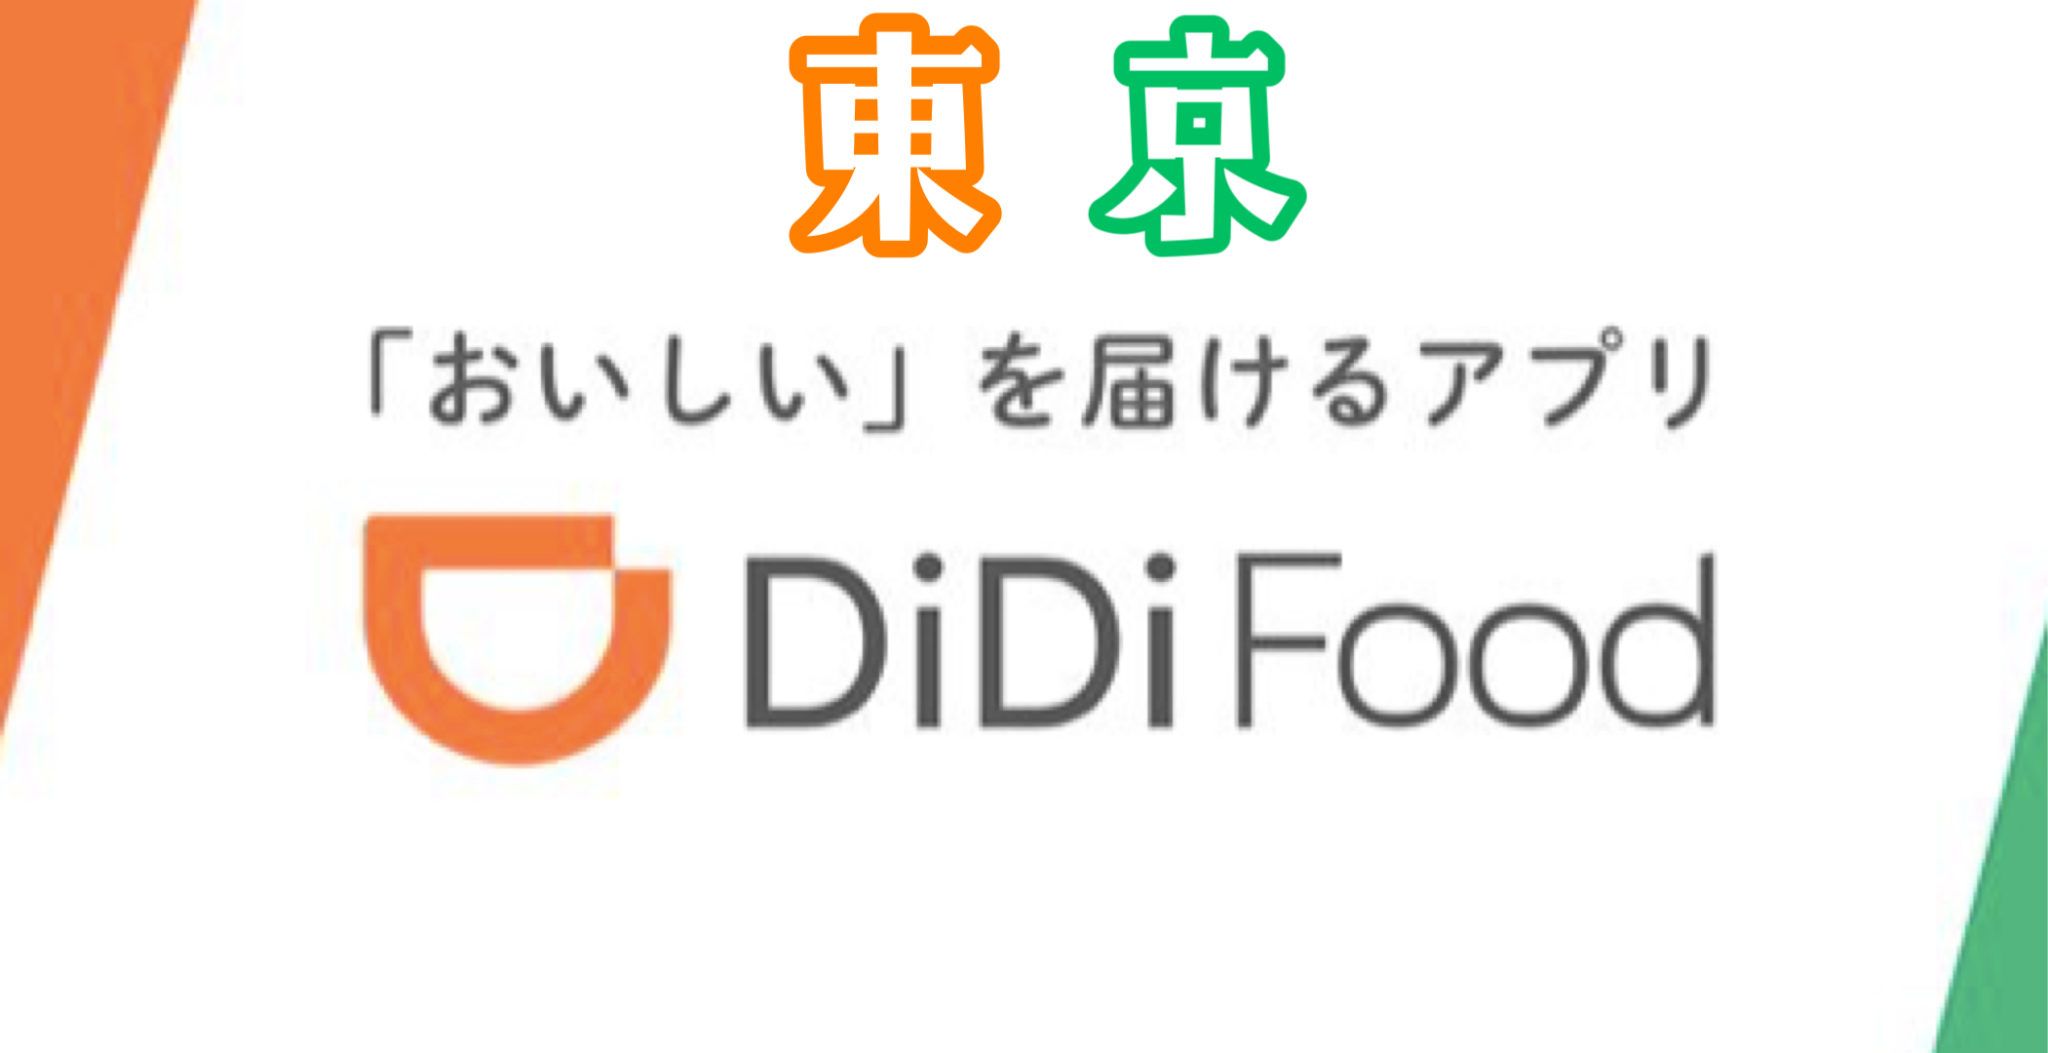 Didi Food ディディフード 東京の配達エリア クーポン 世田谷ローカル Setagaya Local